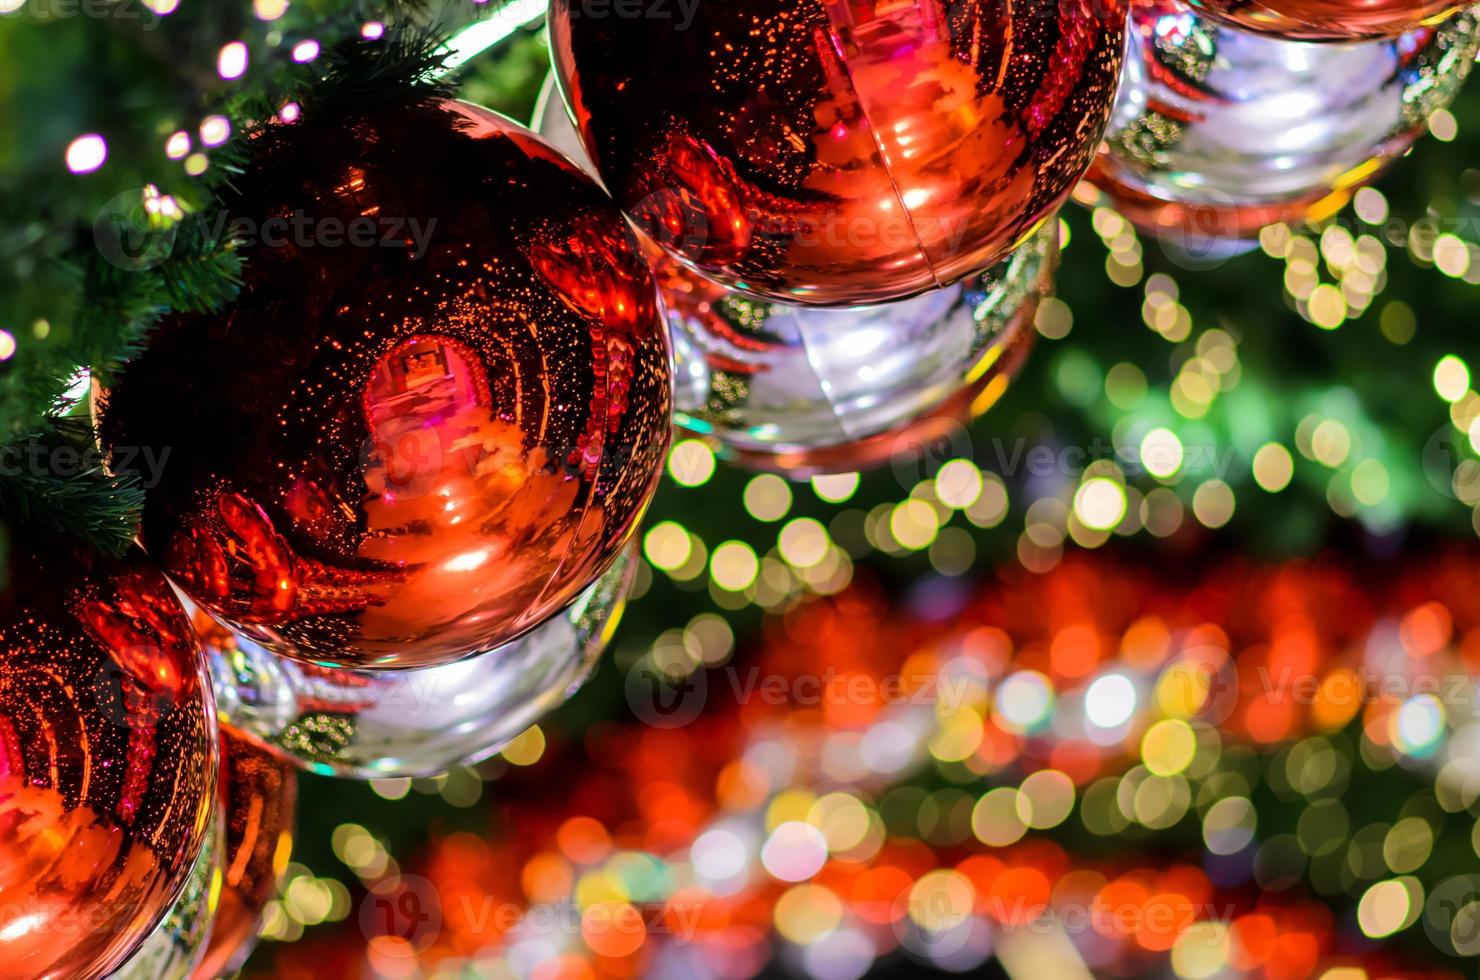 röd struntsak och Övrig prydnad hängande på jul träd med bokeh ljus bakgrund. foto